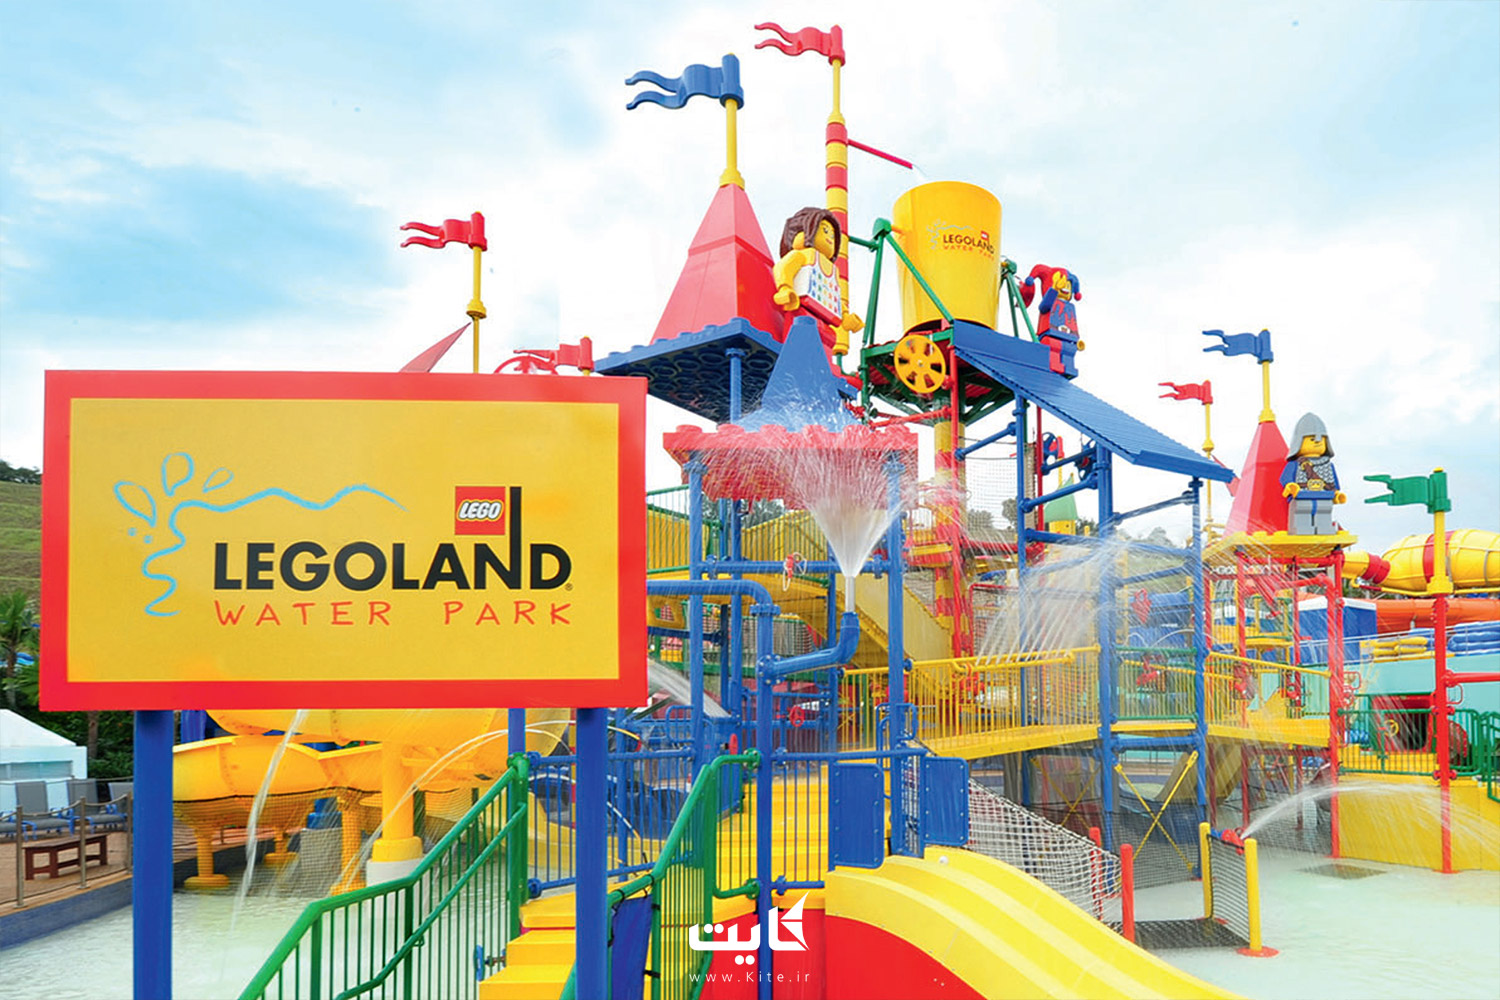 پارک آبی لگولند (Legoland)، دبی، امارات